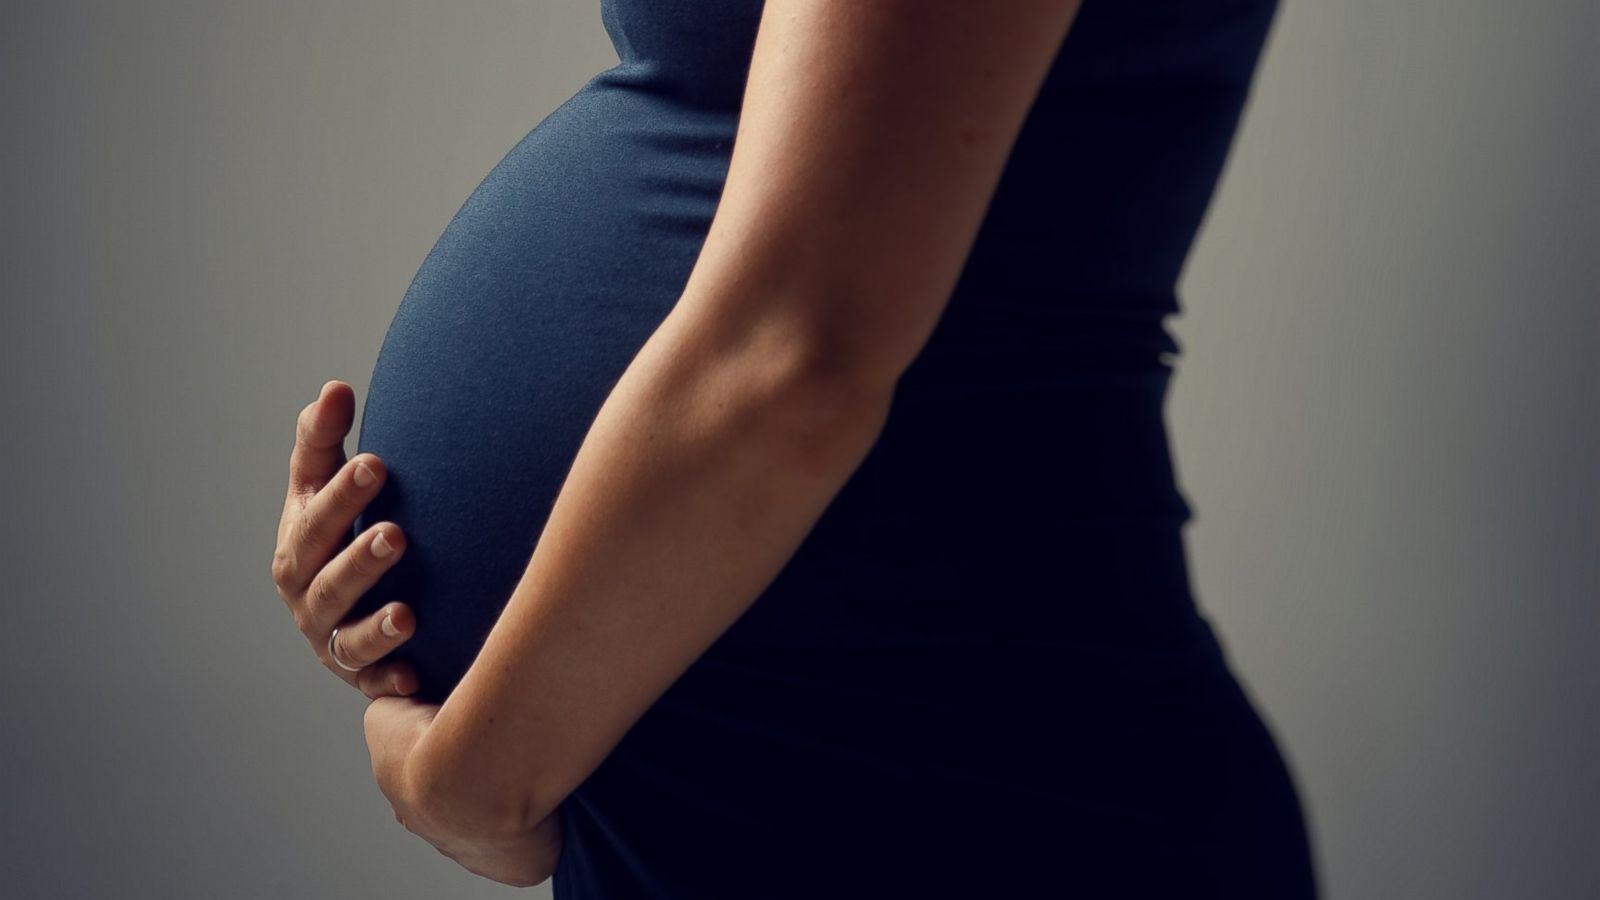 यी डाक्टर जसले आफ्नै शुक्रकिट प्रयोग गरी ११ महिलालाई गर्भवती बनाए